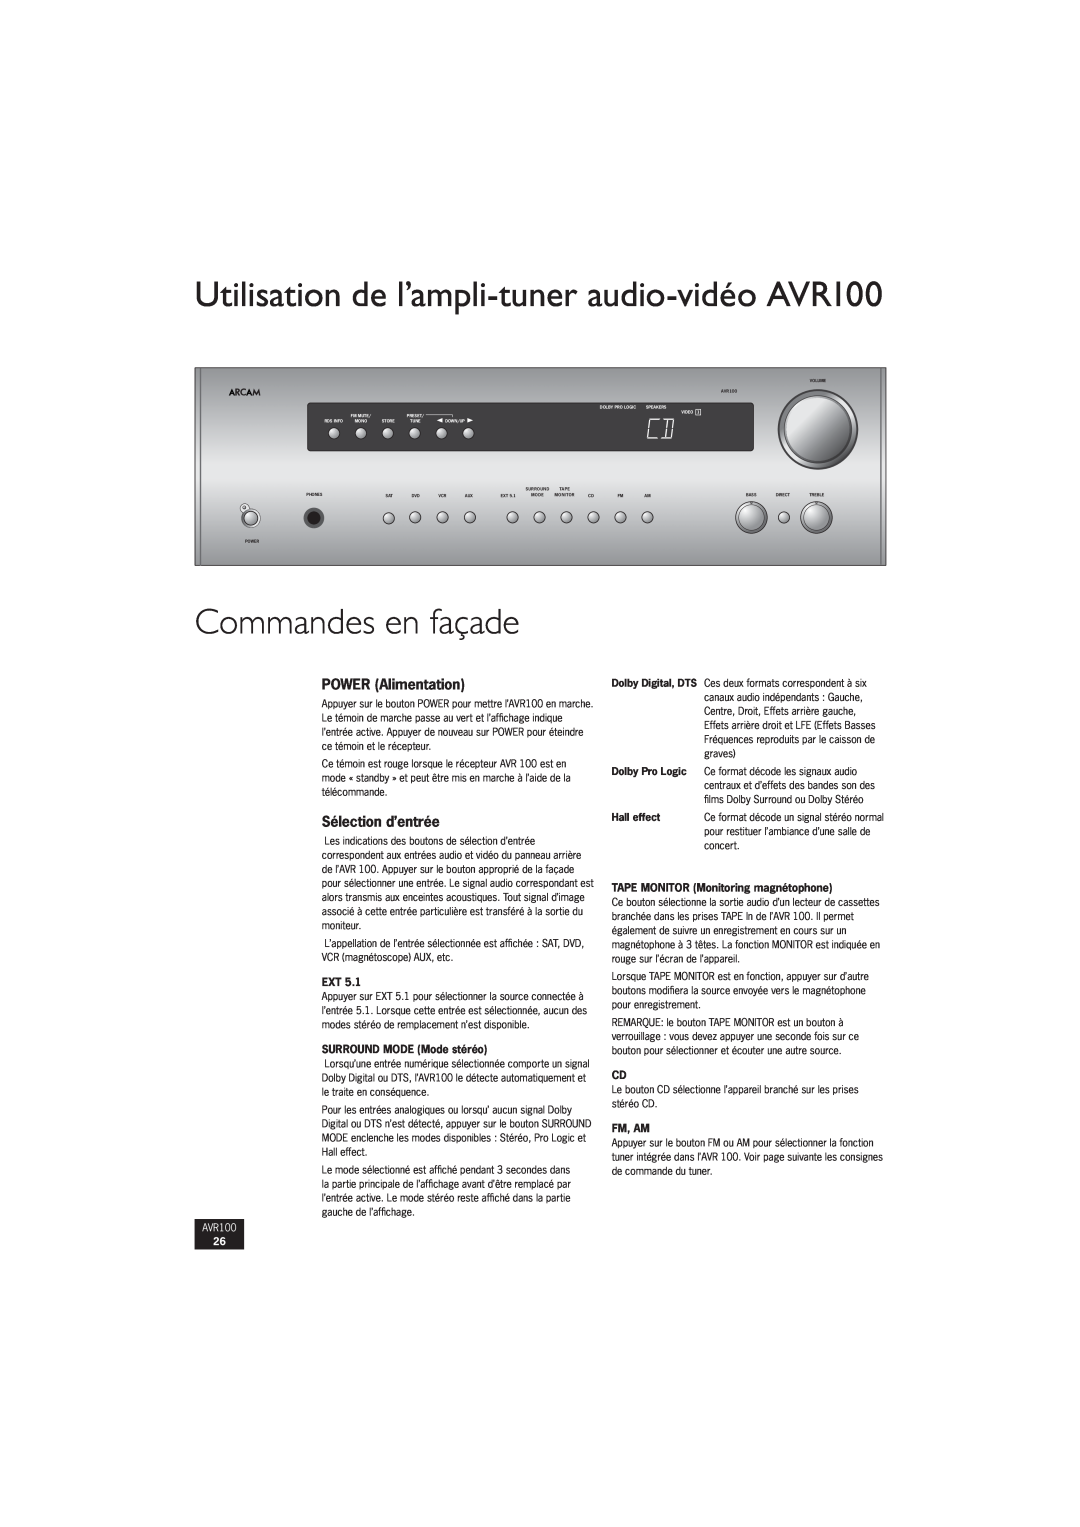 Arcam manual Commandes en façade, Utilisation de l’ampli-tuner audio-vidéoAVR100, POWER Alimentation, Sélection d’entrée 